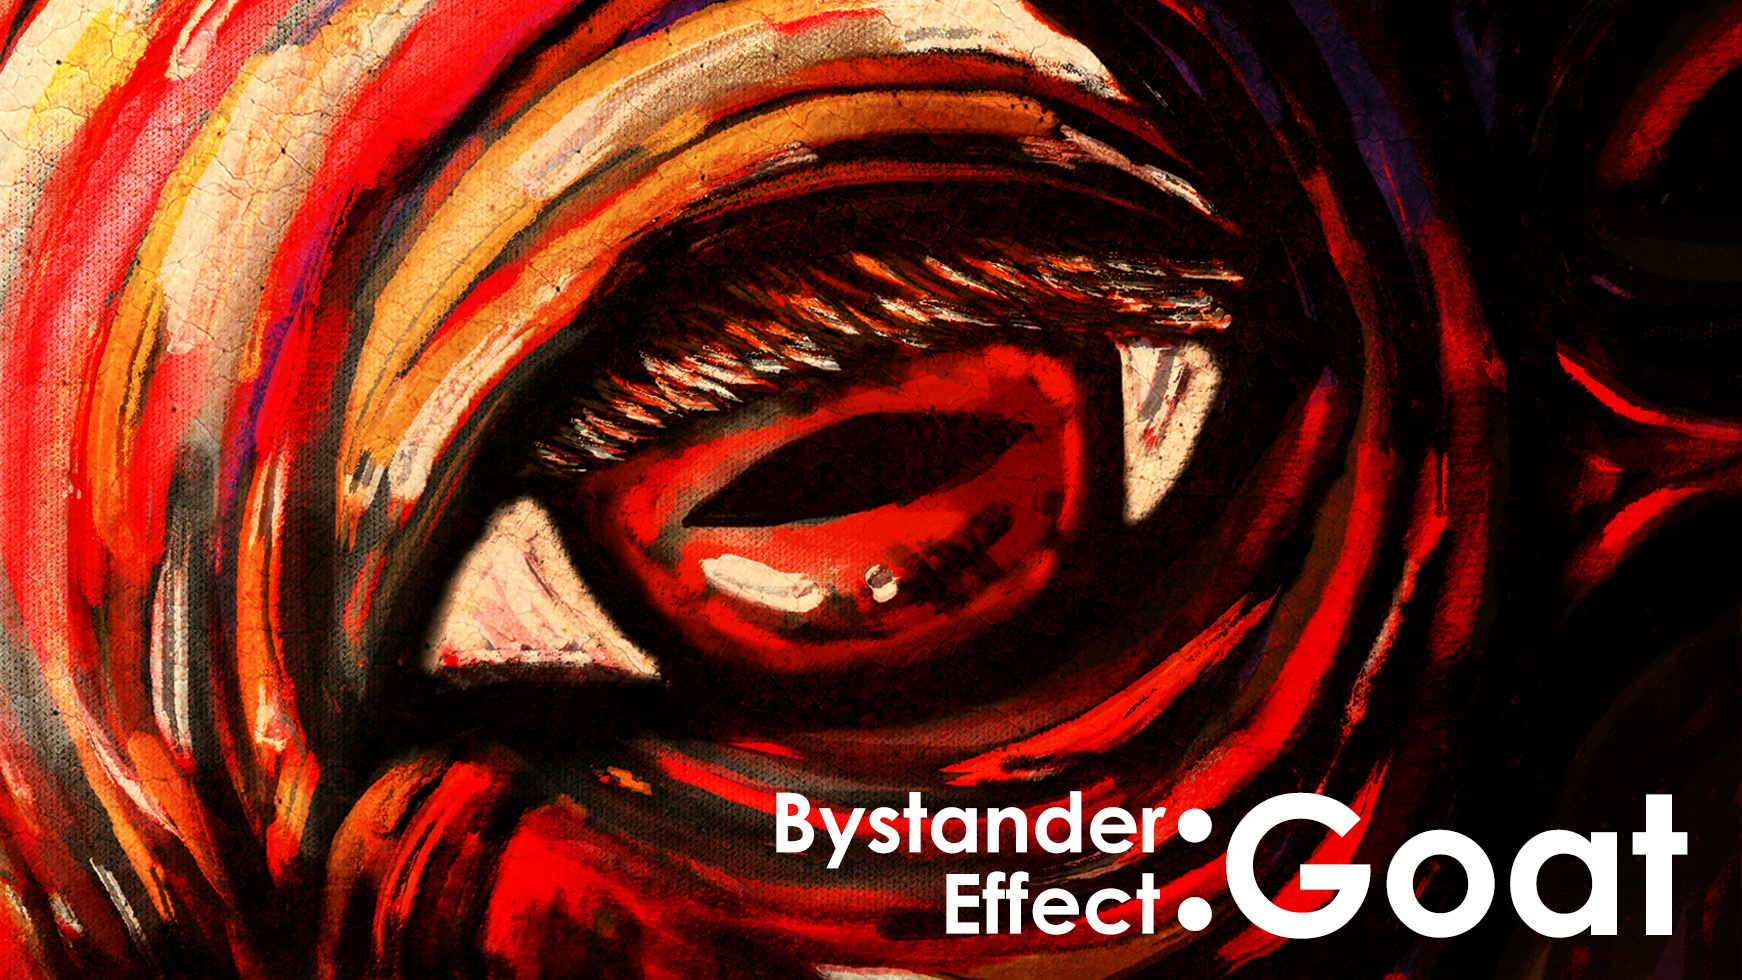 Bystander Effect : Goat